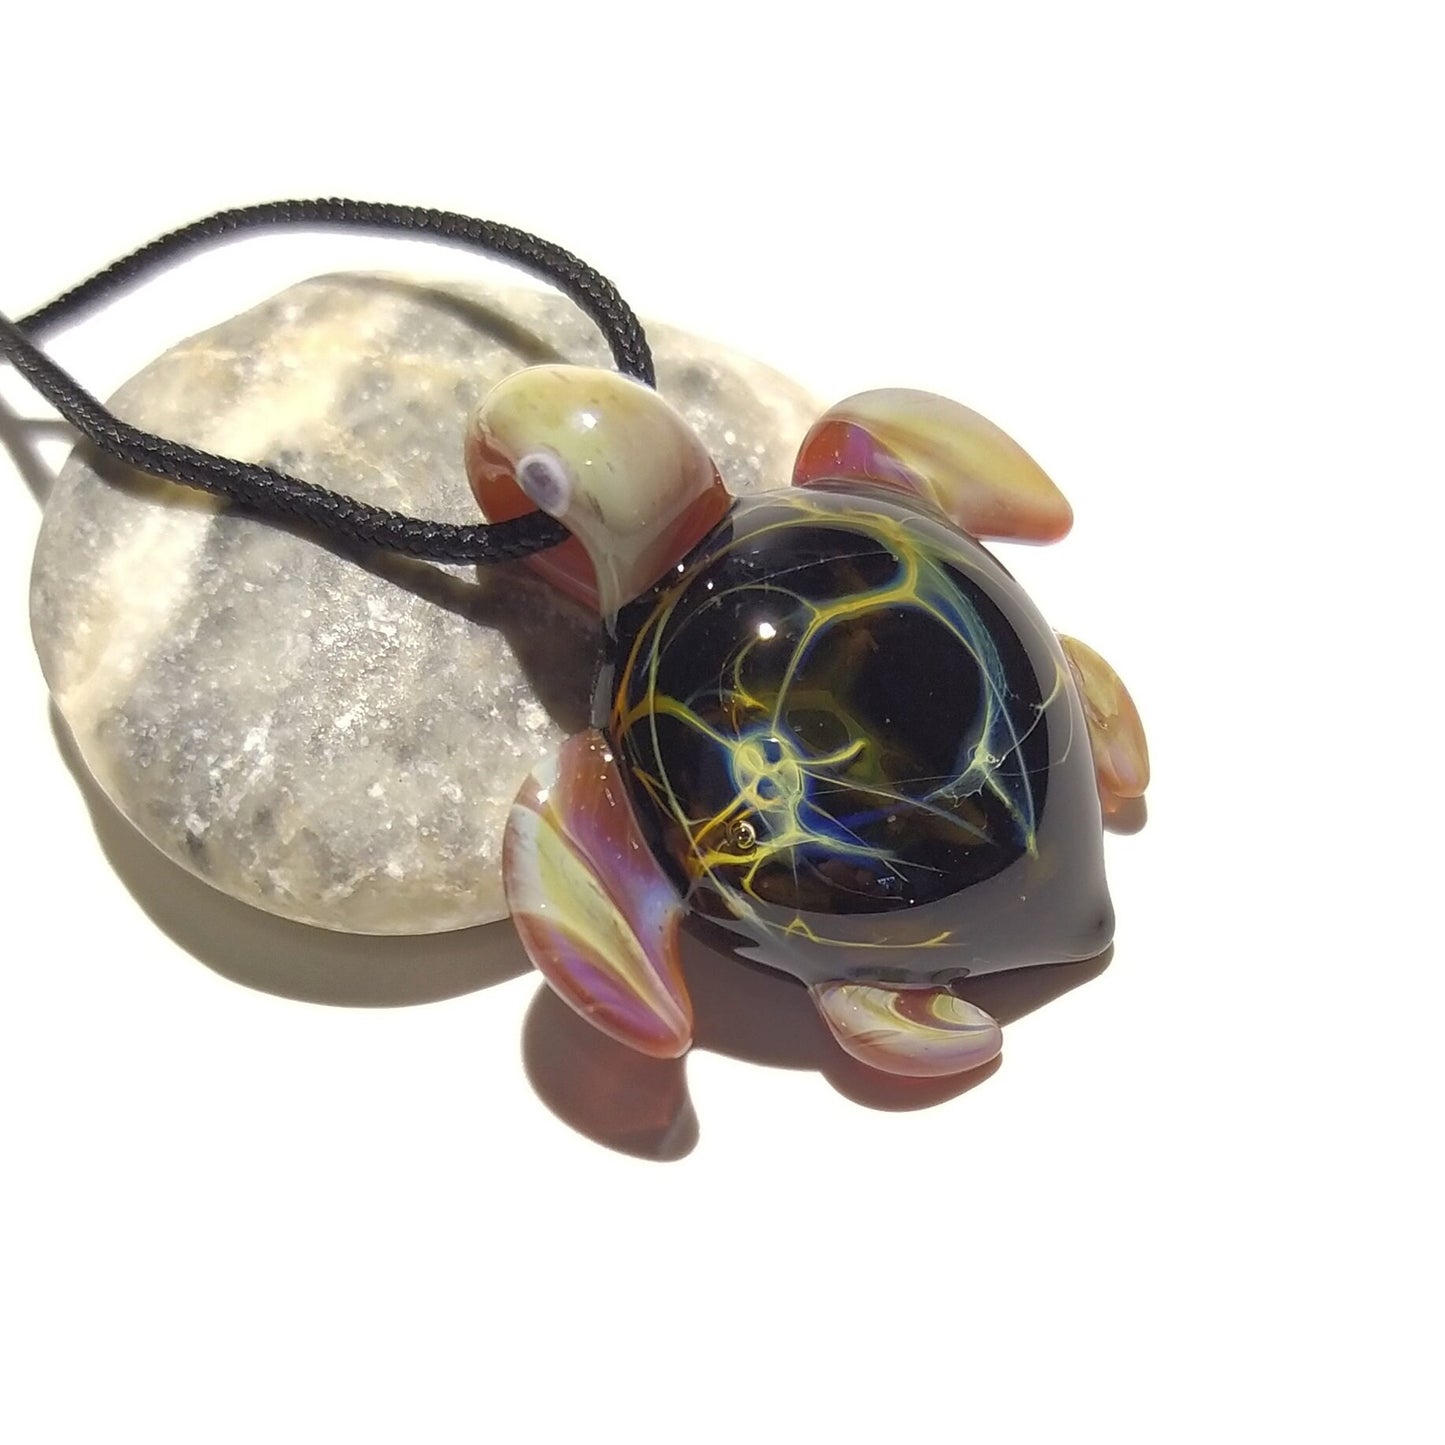 Miniature Turtle - Sea Turtle - Heady Glass - Handmade - Turtle Jewelry - Turtle Jewelry Gift - Beach Jewelry - Boro Focal Bead - Heady!